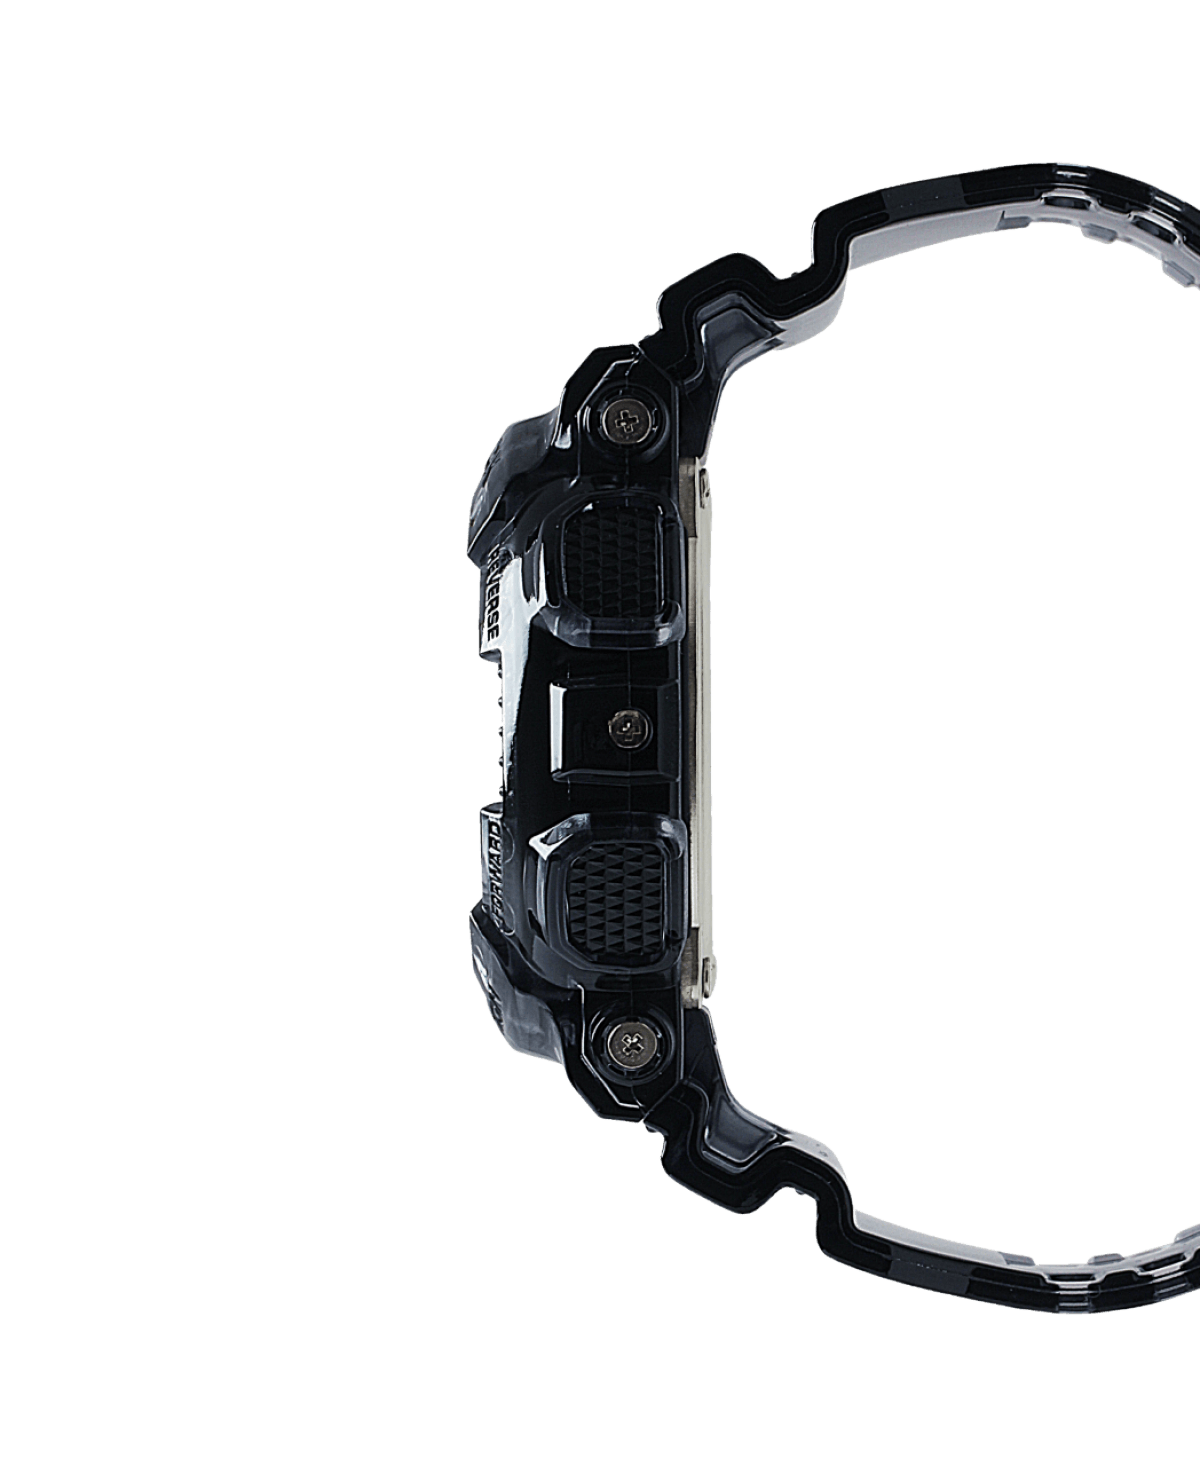 GA-110 Series Watch - Black Resin Strap